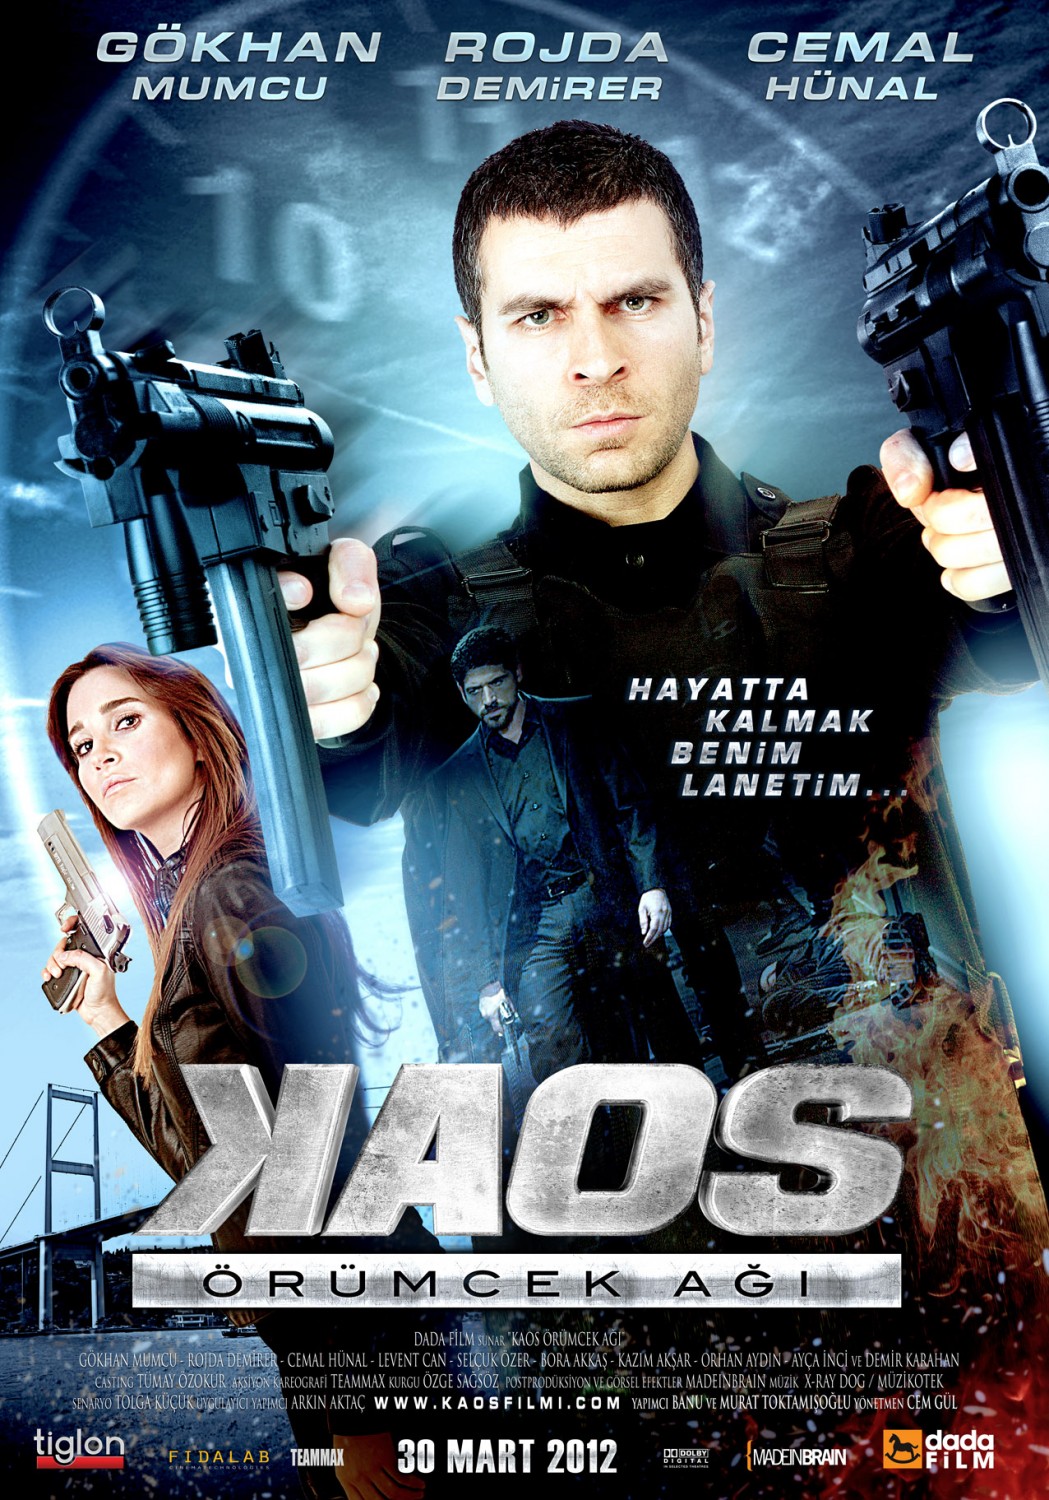 Extra Large Movie Poster Image for Kaos örümcek agi (#2 of 4)